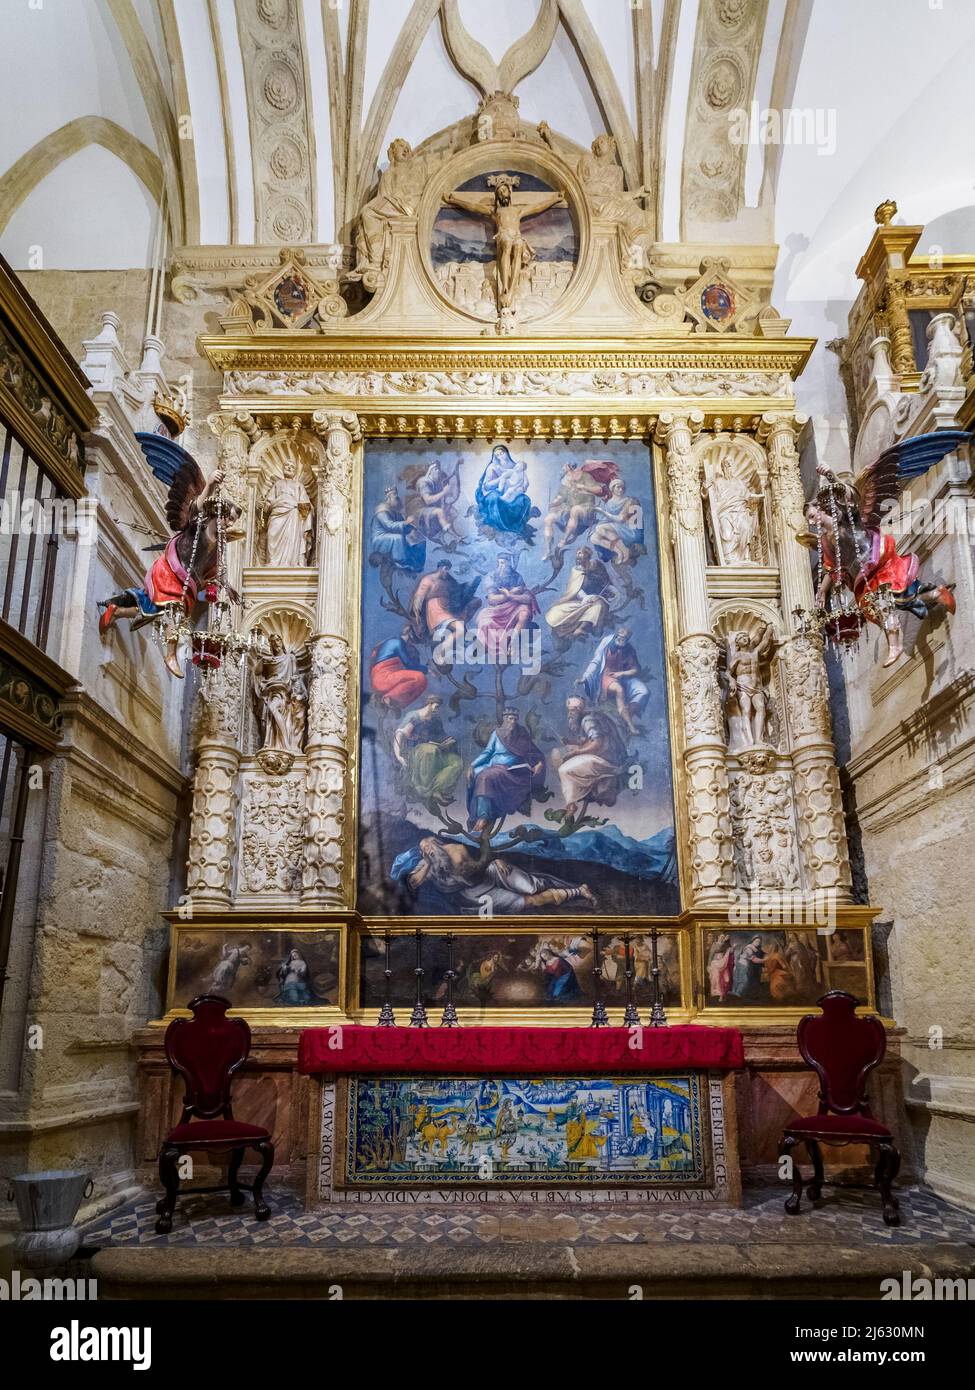 Capilla de Natividad de Nuestra Senora (Kapelle der Geburt unserer Lieben Frau) in der Mezquita-Kathedrale (große Moschee von Cordoba) - Cordoba, Spanien Stockfoto